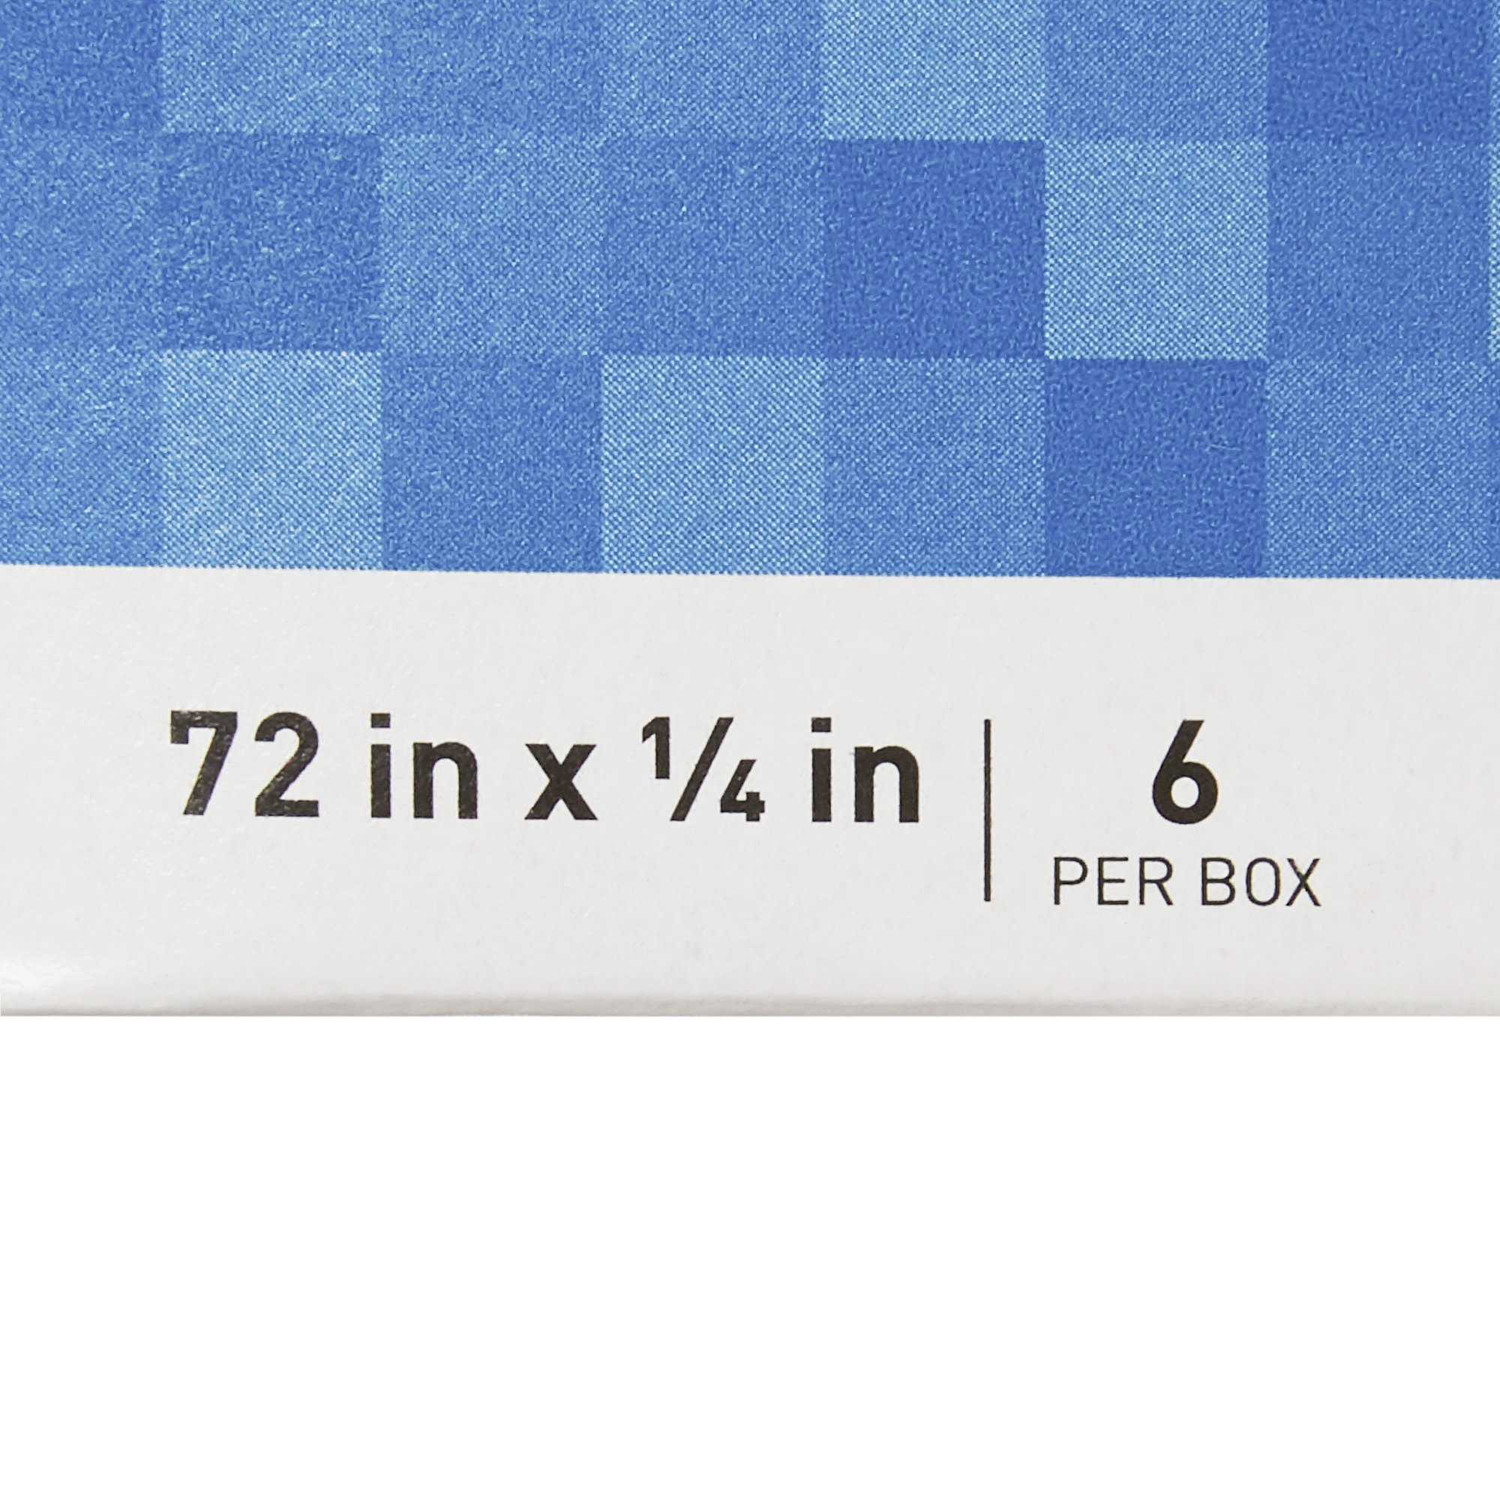 Dukal Fiberglass Tape Measure with White Plastic Case 1/4 x 120